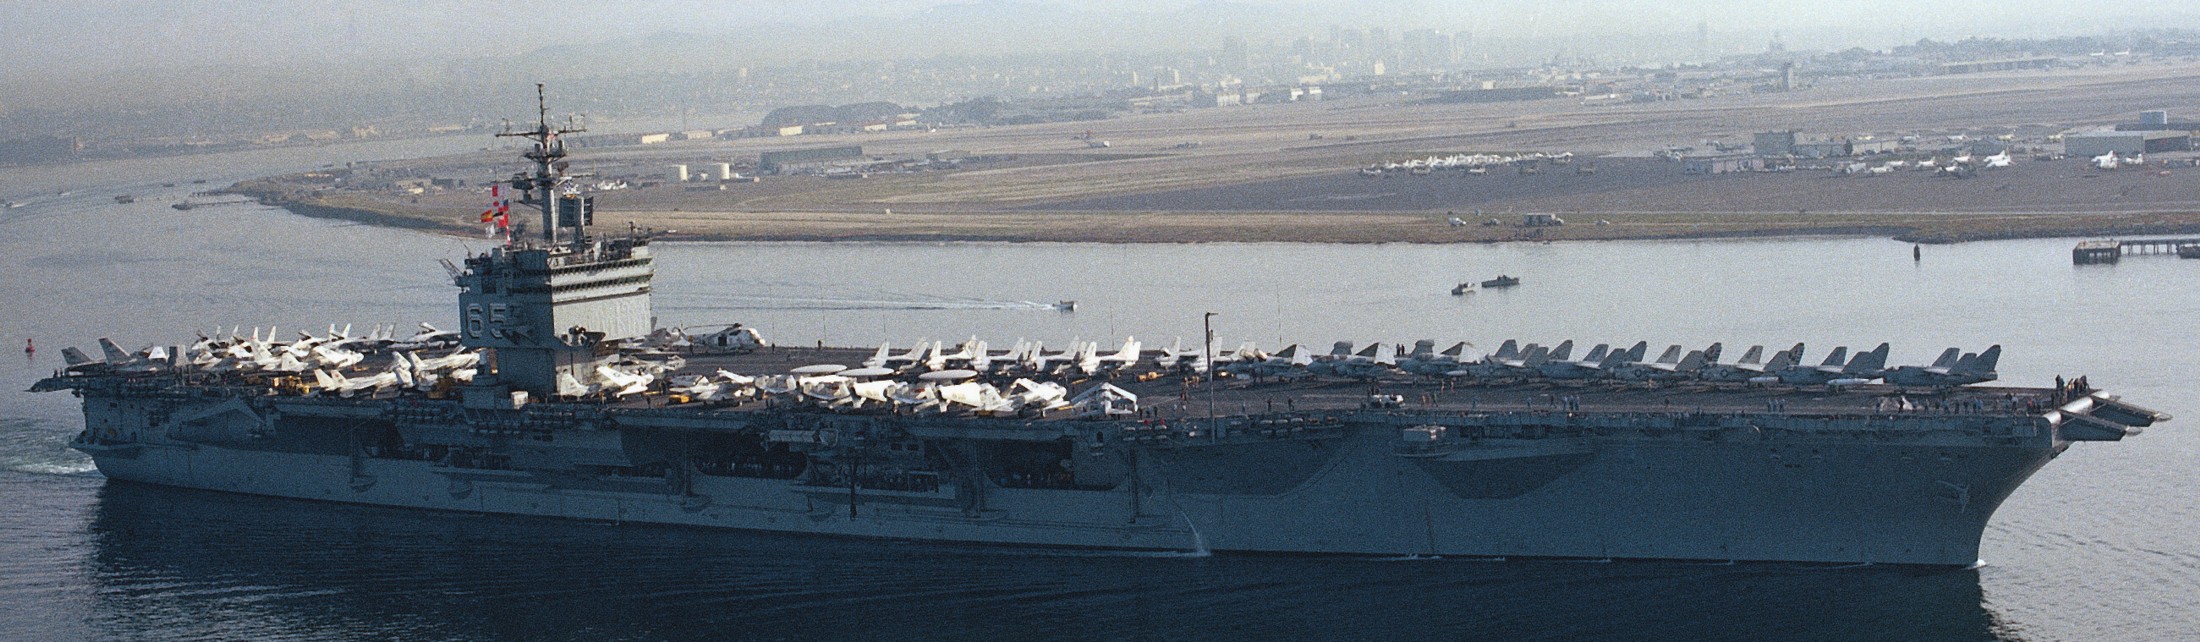 cvn-65 uss enterprise aircraft carrier air wing cvw-11 us navy nas north island 1984 169